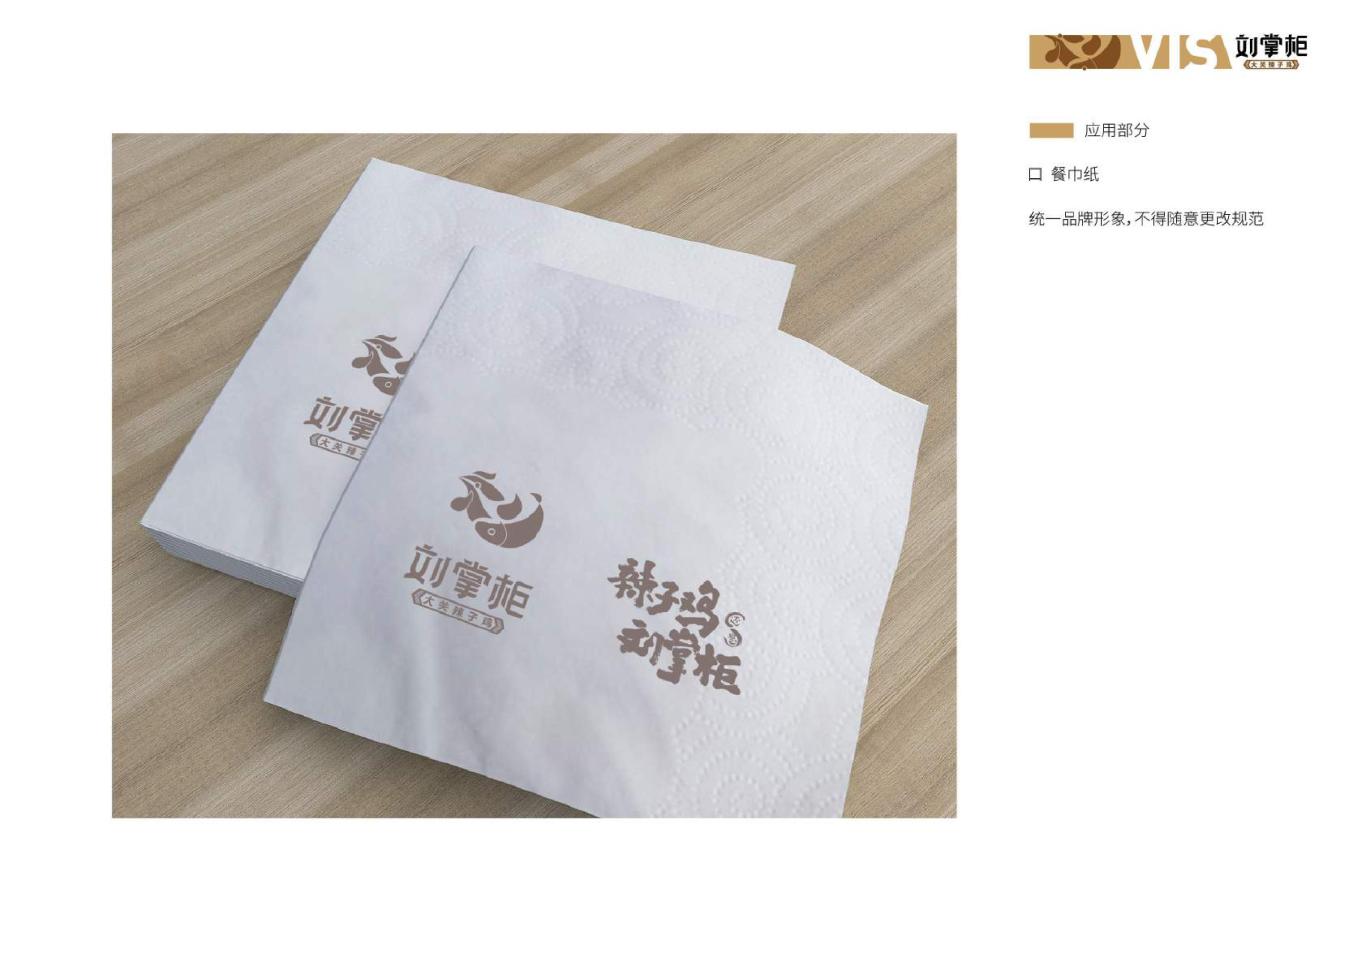 刘掌柜餐饮行业logo、vis系统设计图25